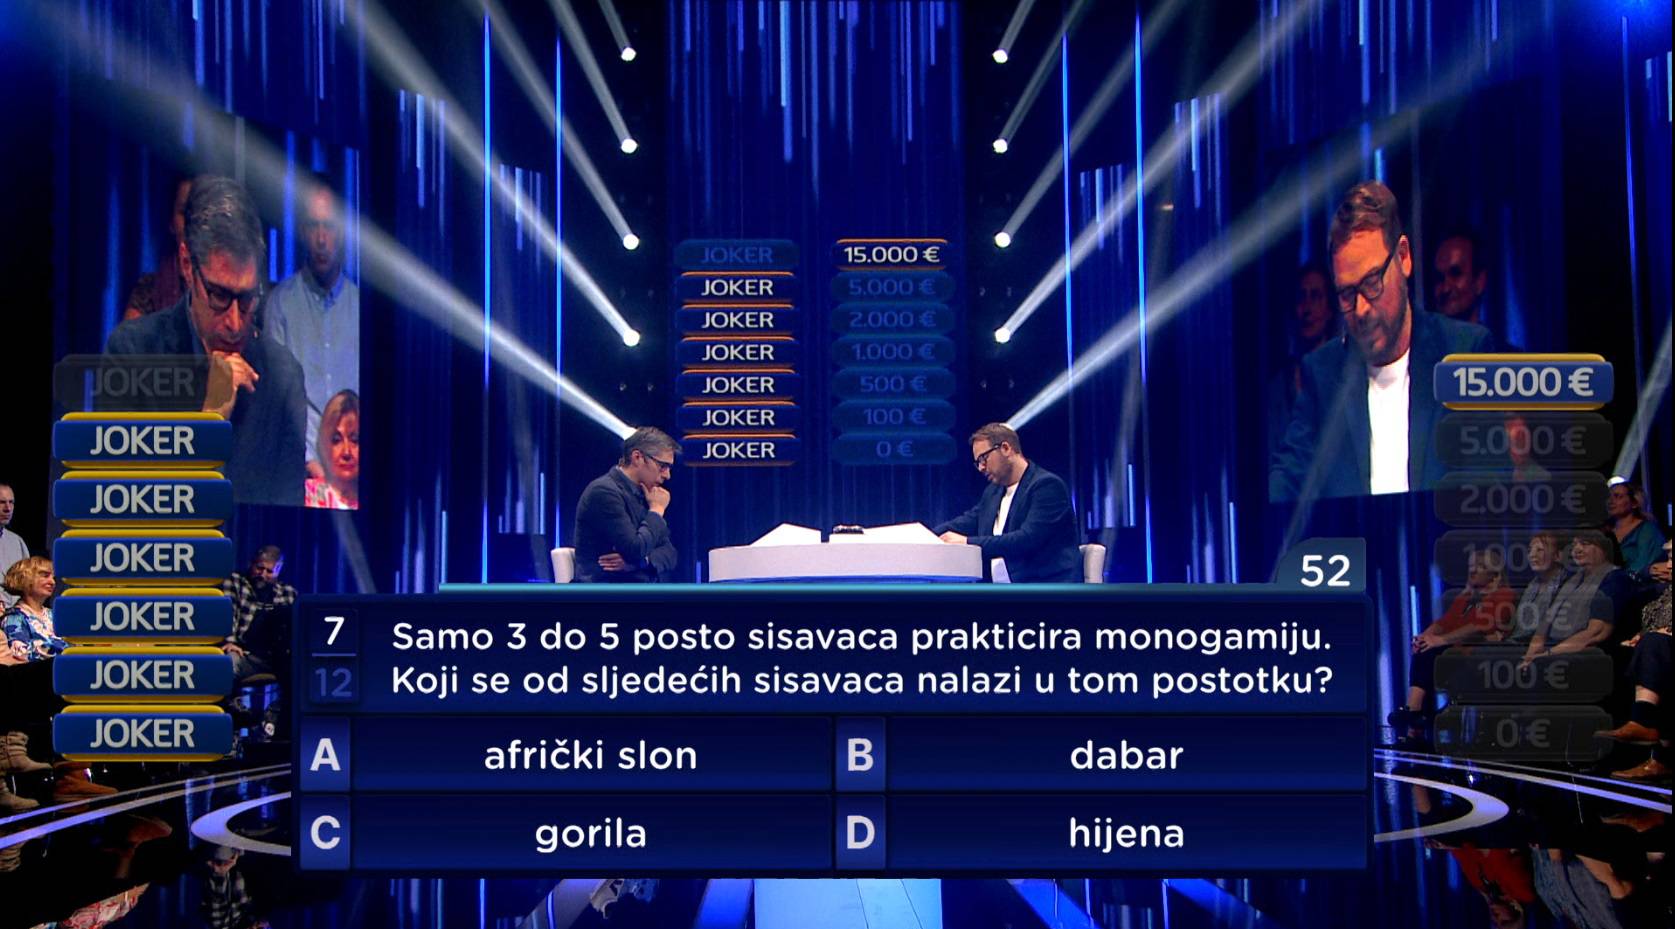 Veliki obrat već u prvoj epizodi 'Jokera': Marija Šimundžu je reper Ice-T koštao 15.000 eura